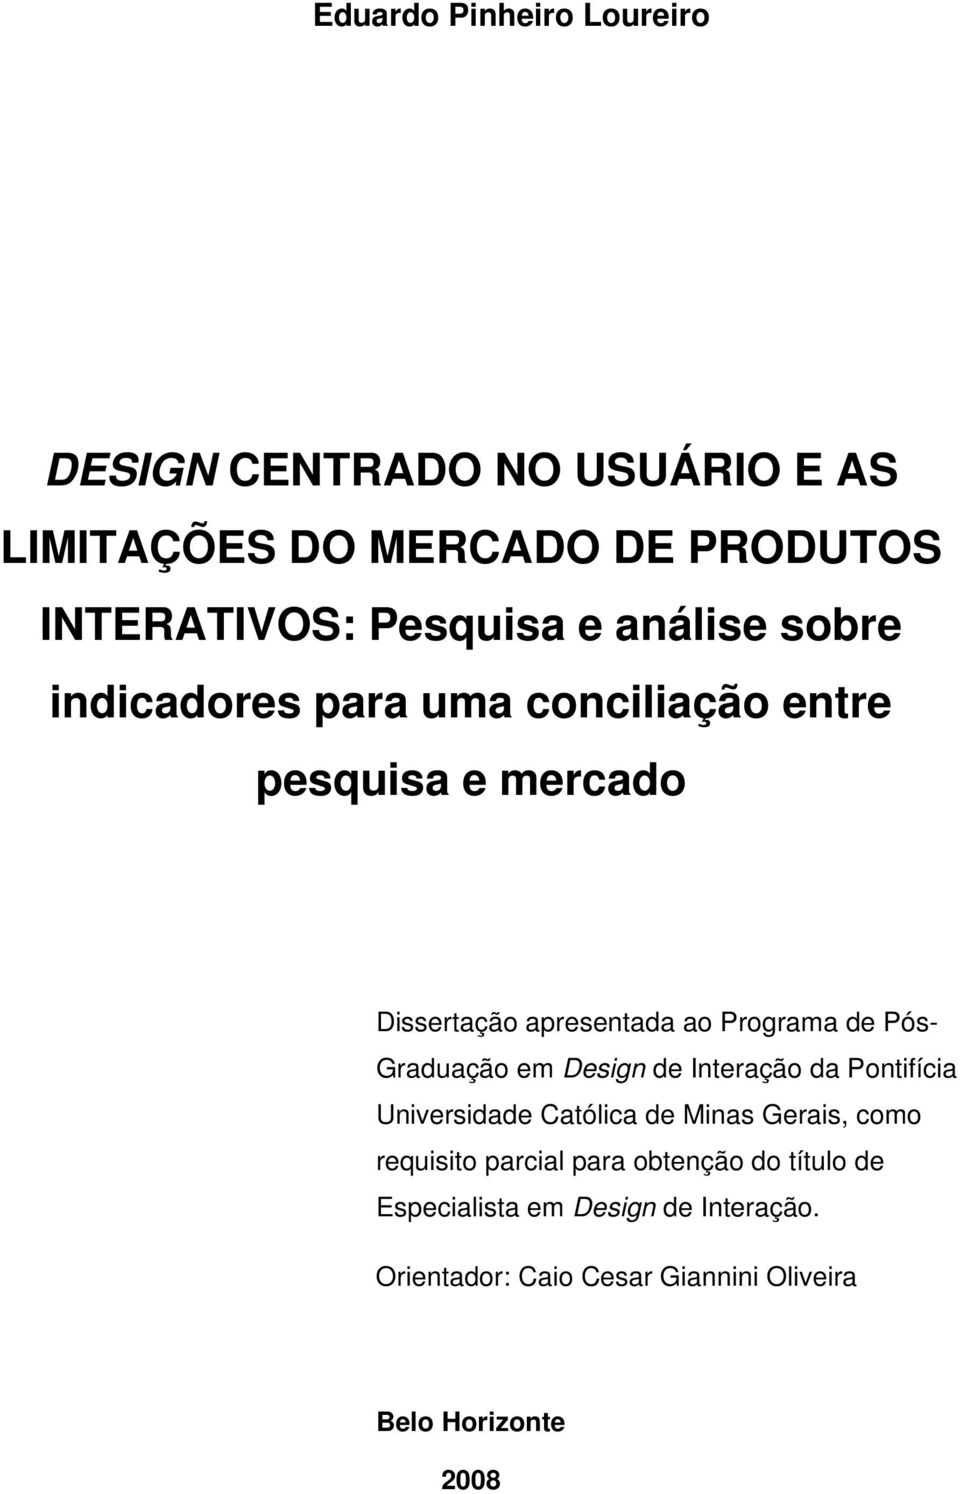 Graduação em Design de Interação da Pontifícia Universidade Católica de Minas Gerais, como requisito parcial para